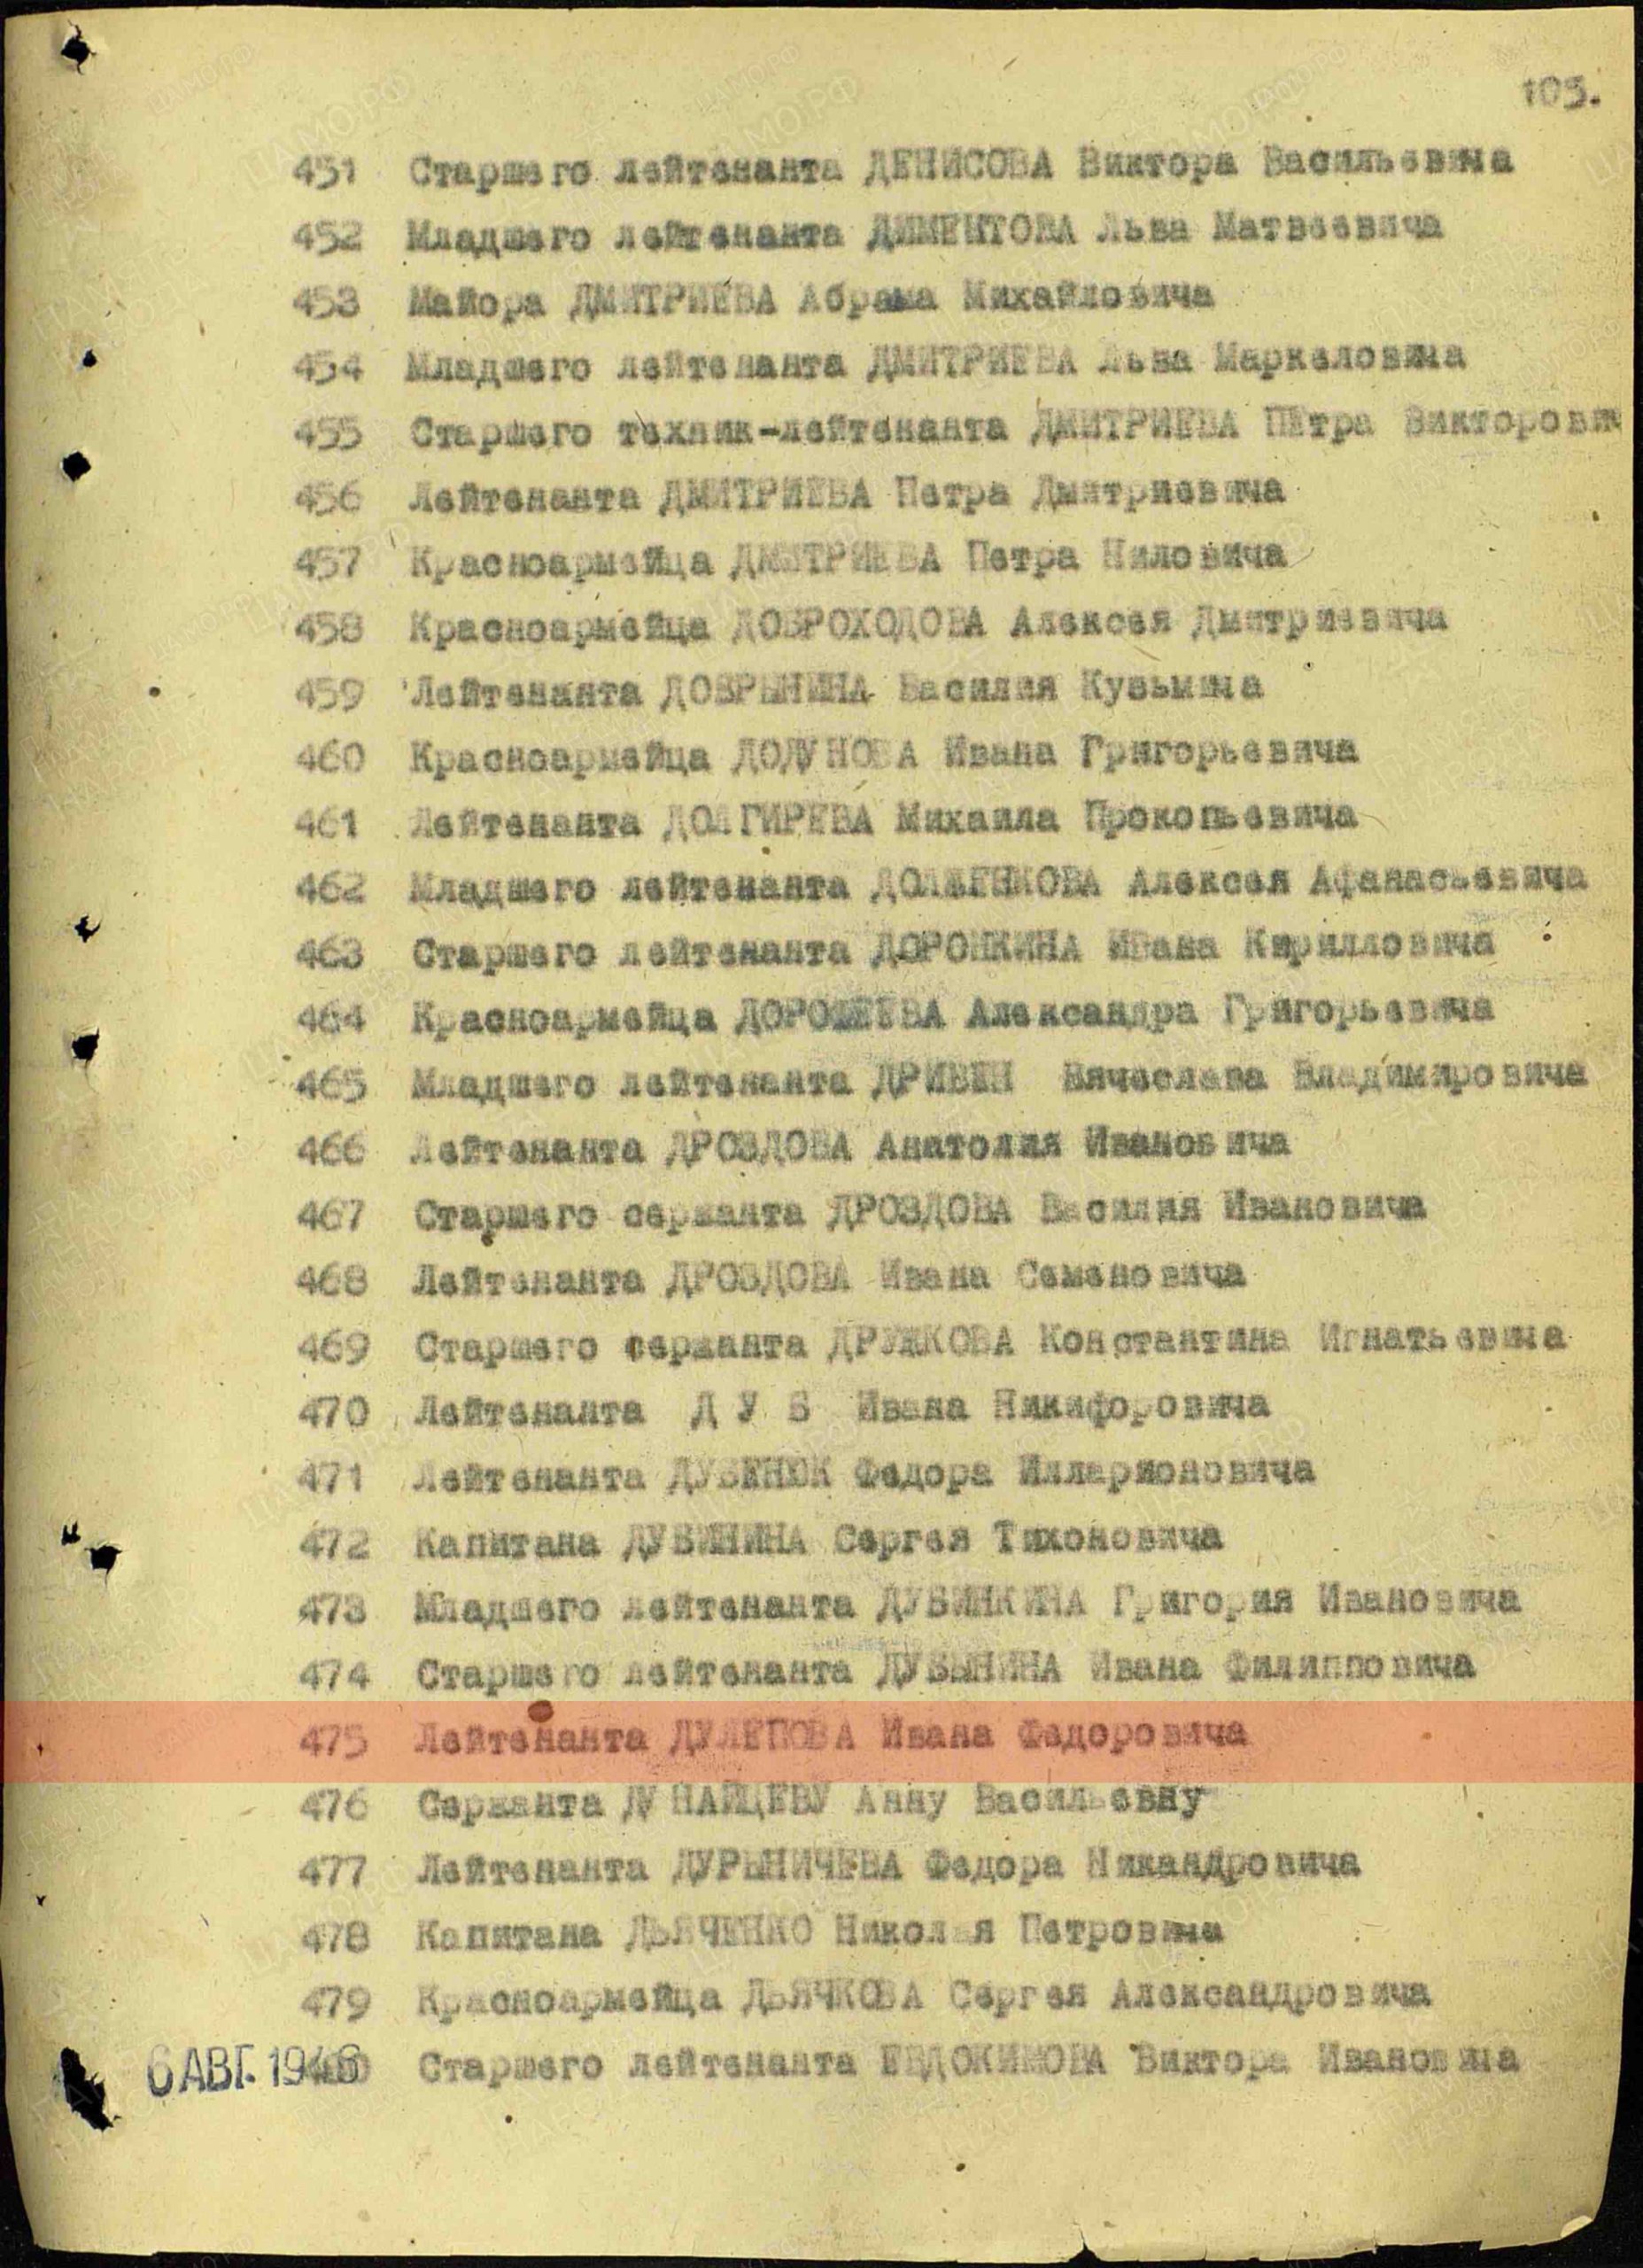 Лист приказа о награждении (строка в наградном списке). Орден Красной Звезды, 1946г.